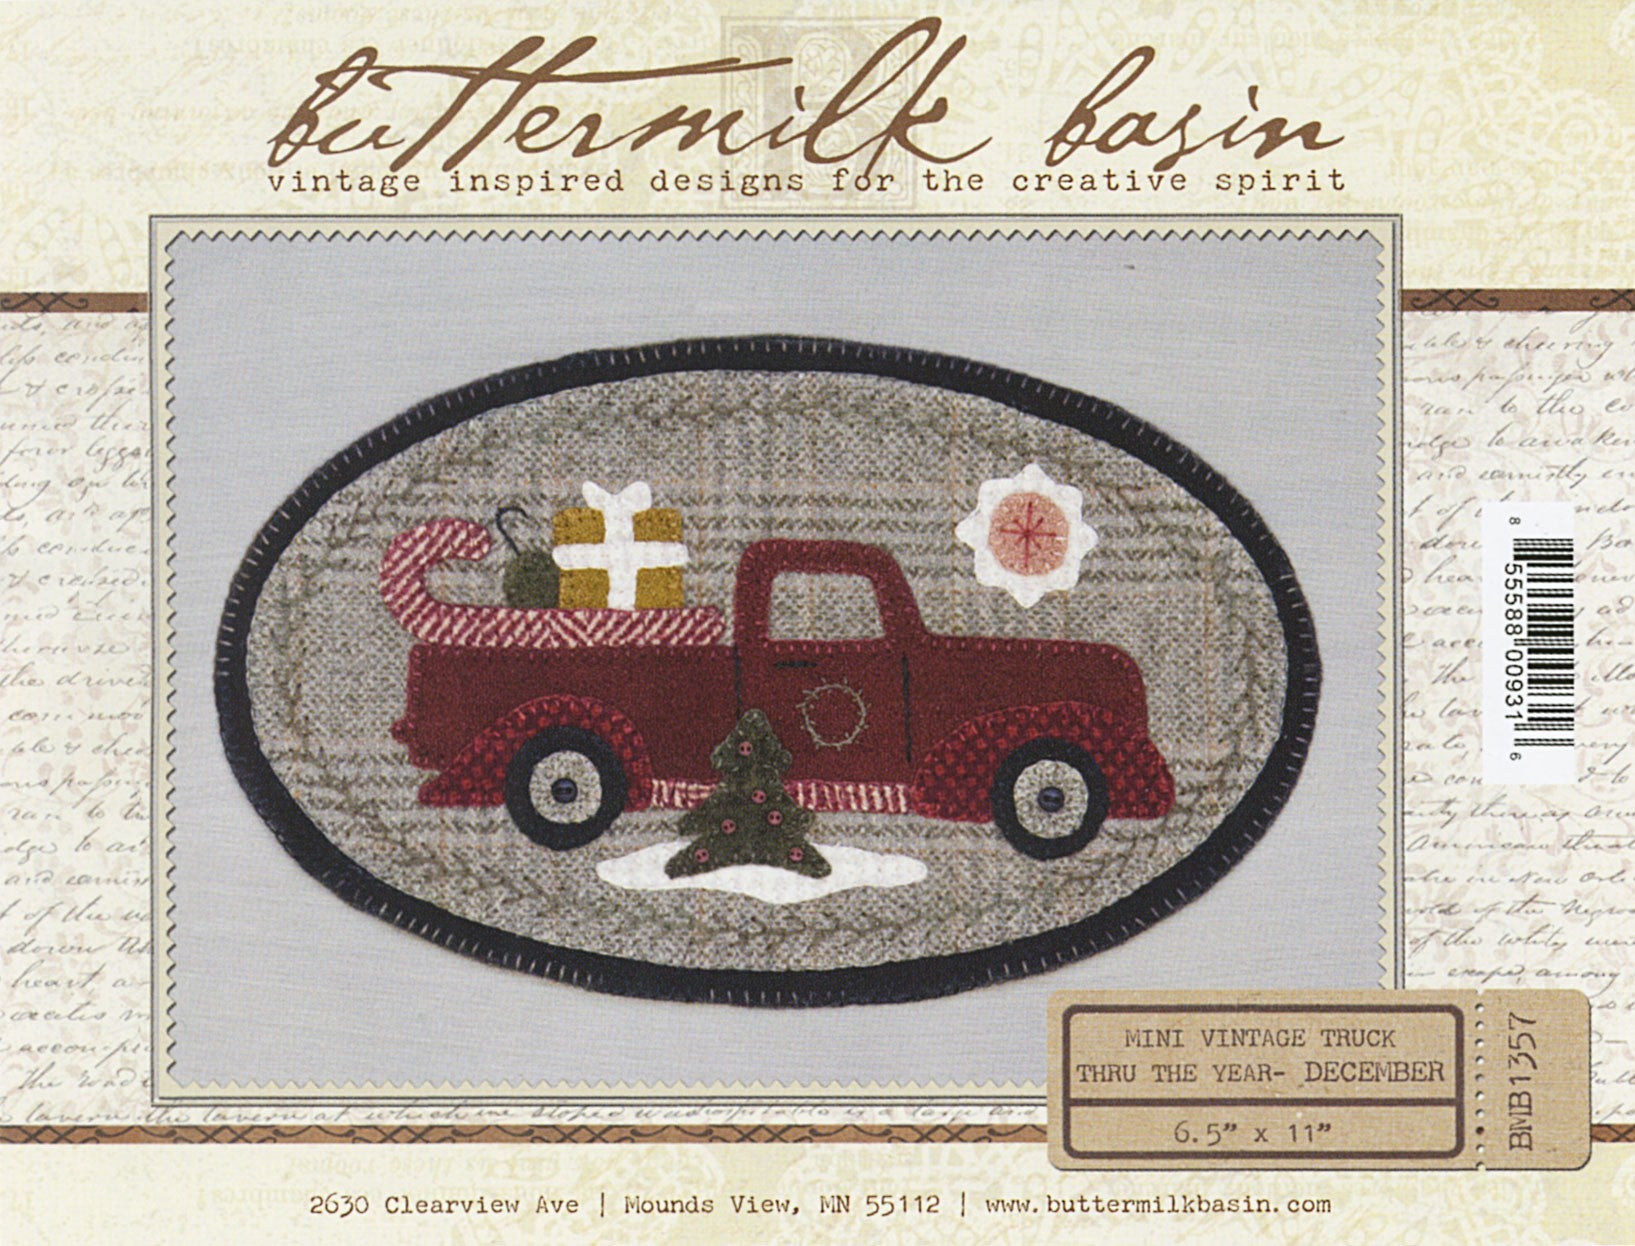 Mini Vintage Truck Thru The Year December Applique Pattern by Buttermilk Basin